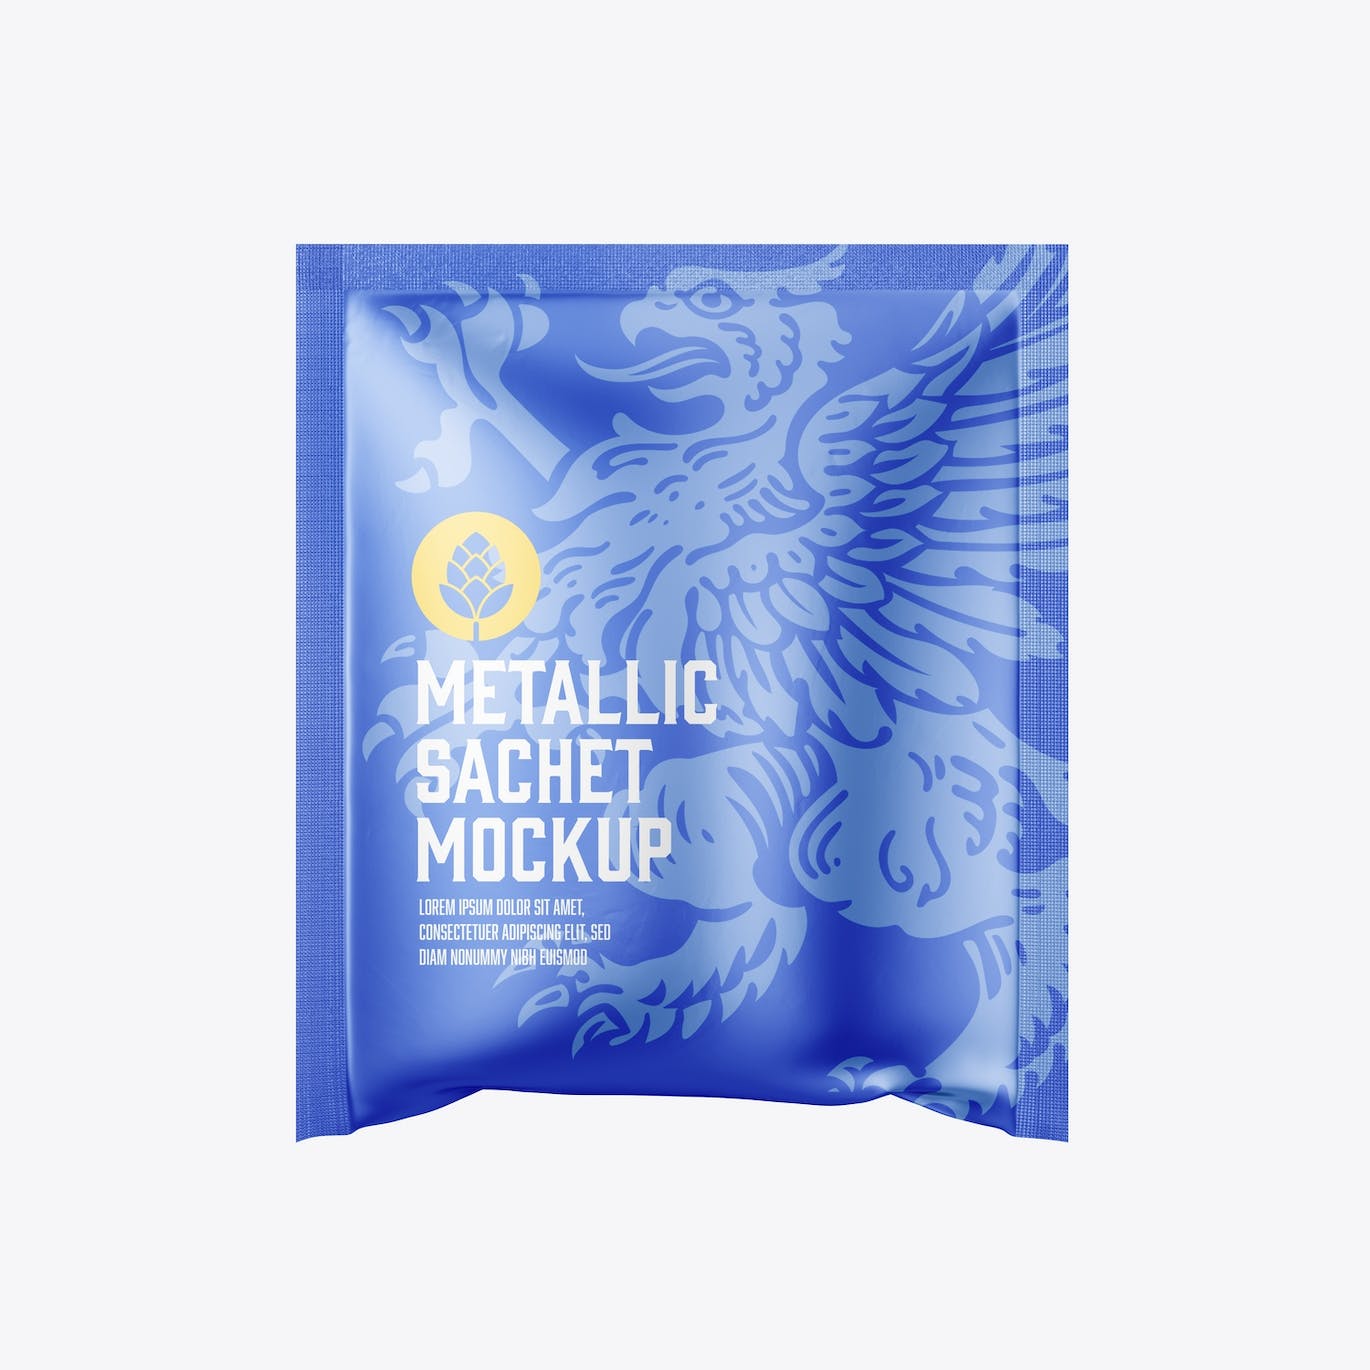 金属材质包装袋设计样机图 Metallic Sachet Mockup 样机素材 第7张